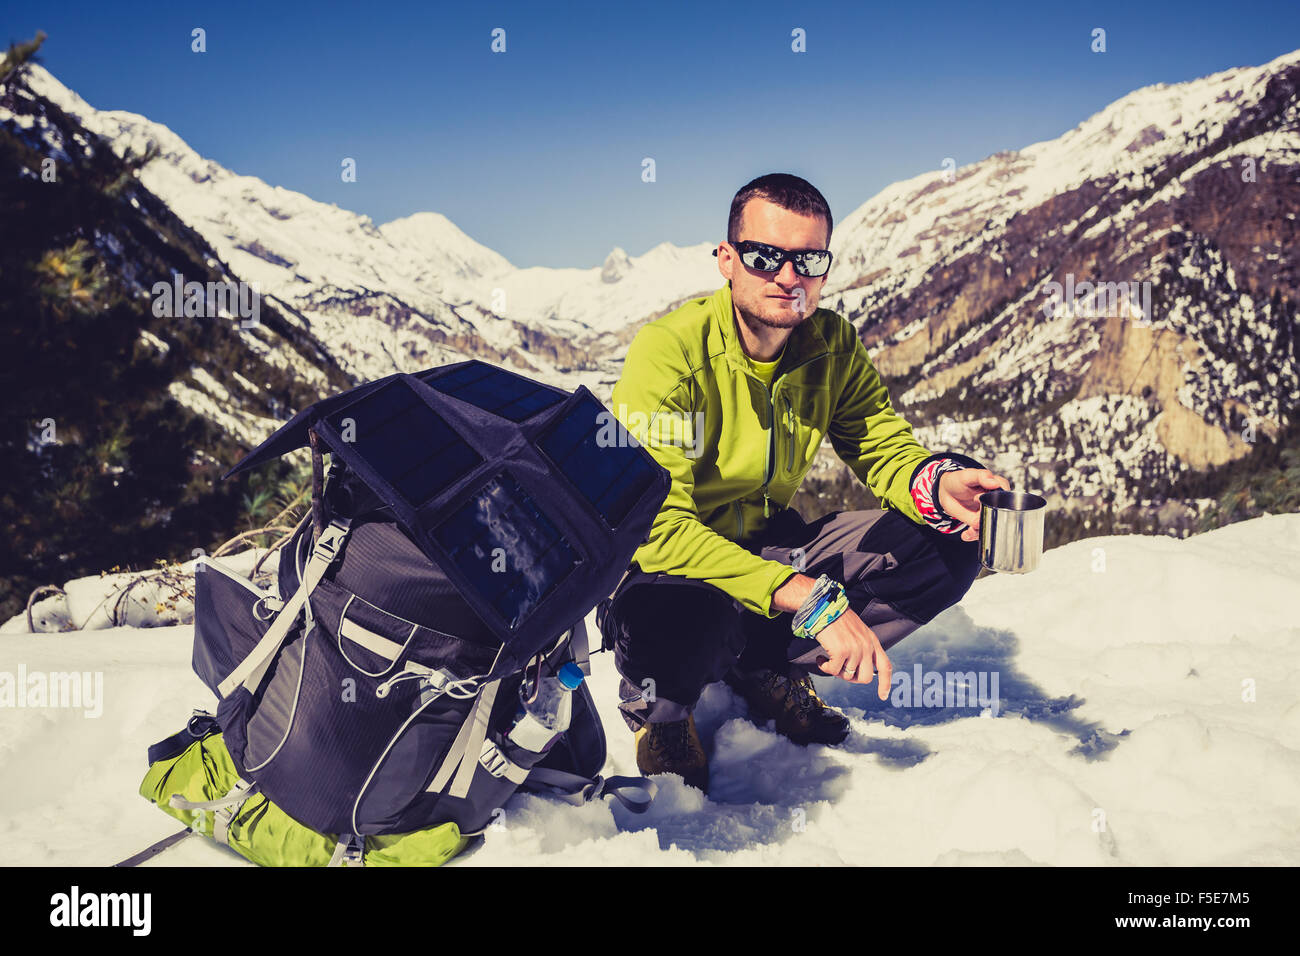 Mann-Wanderer, camping und trekking auf Schnee im Hochgebirge des Himalaya in Nepal. Trekking im weißen Winter oder Herbst Natur. Annapurna Stockfoto